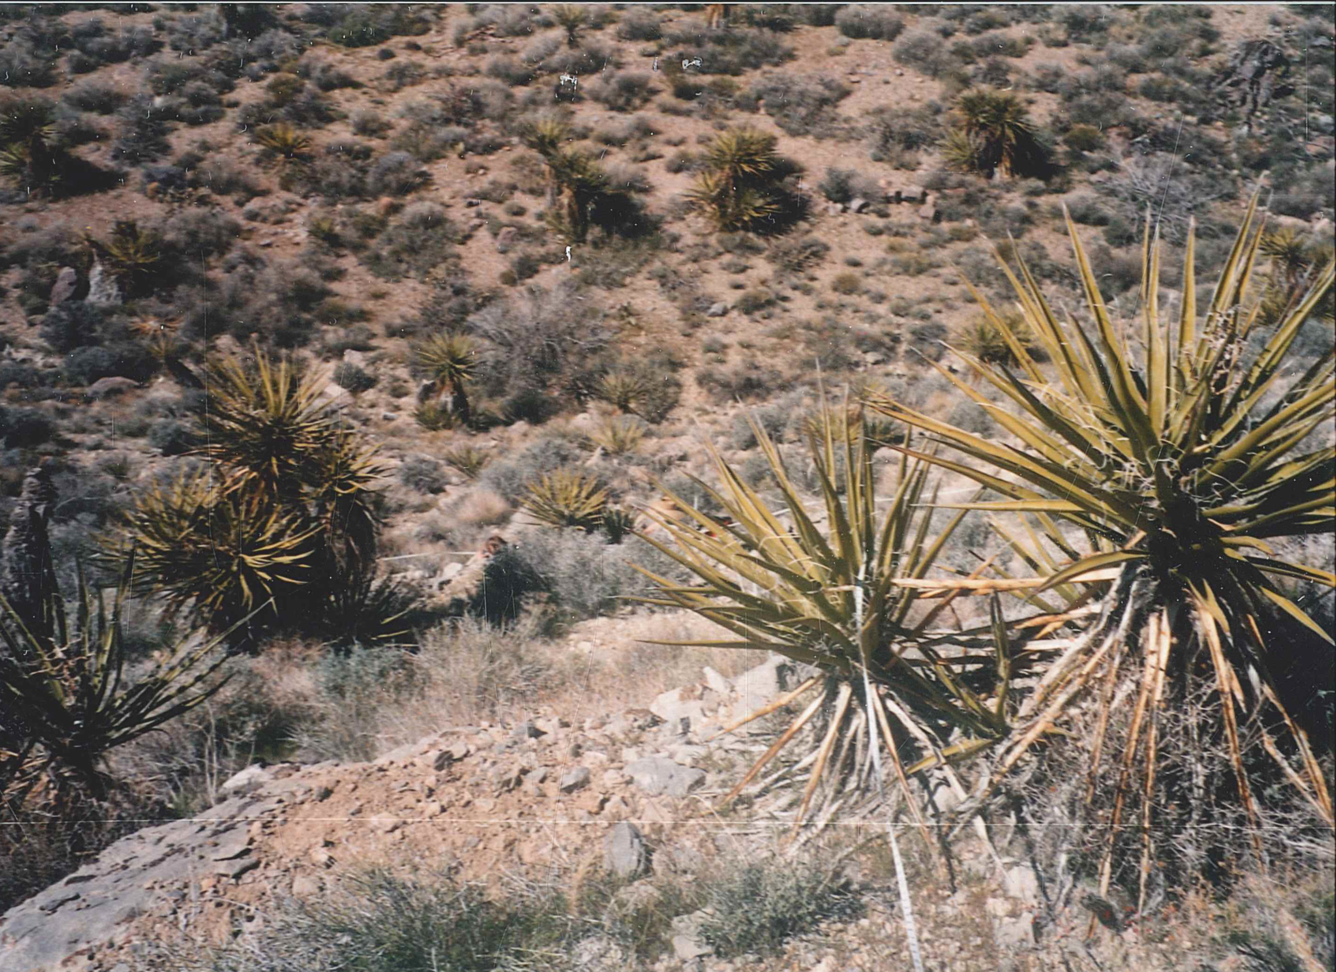 Central Mojave Desert landscape